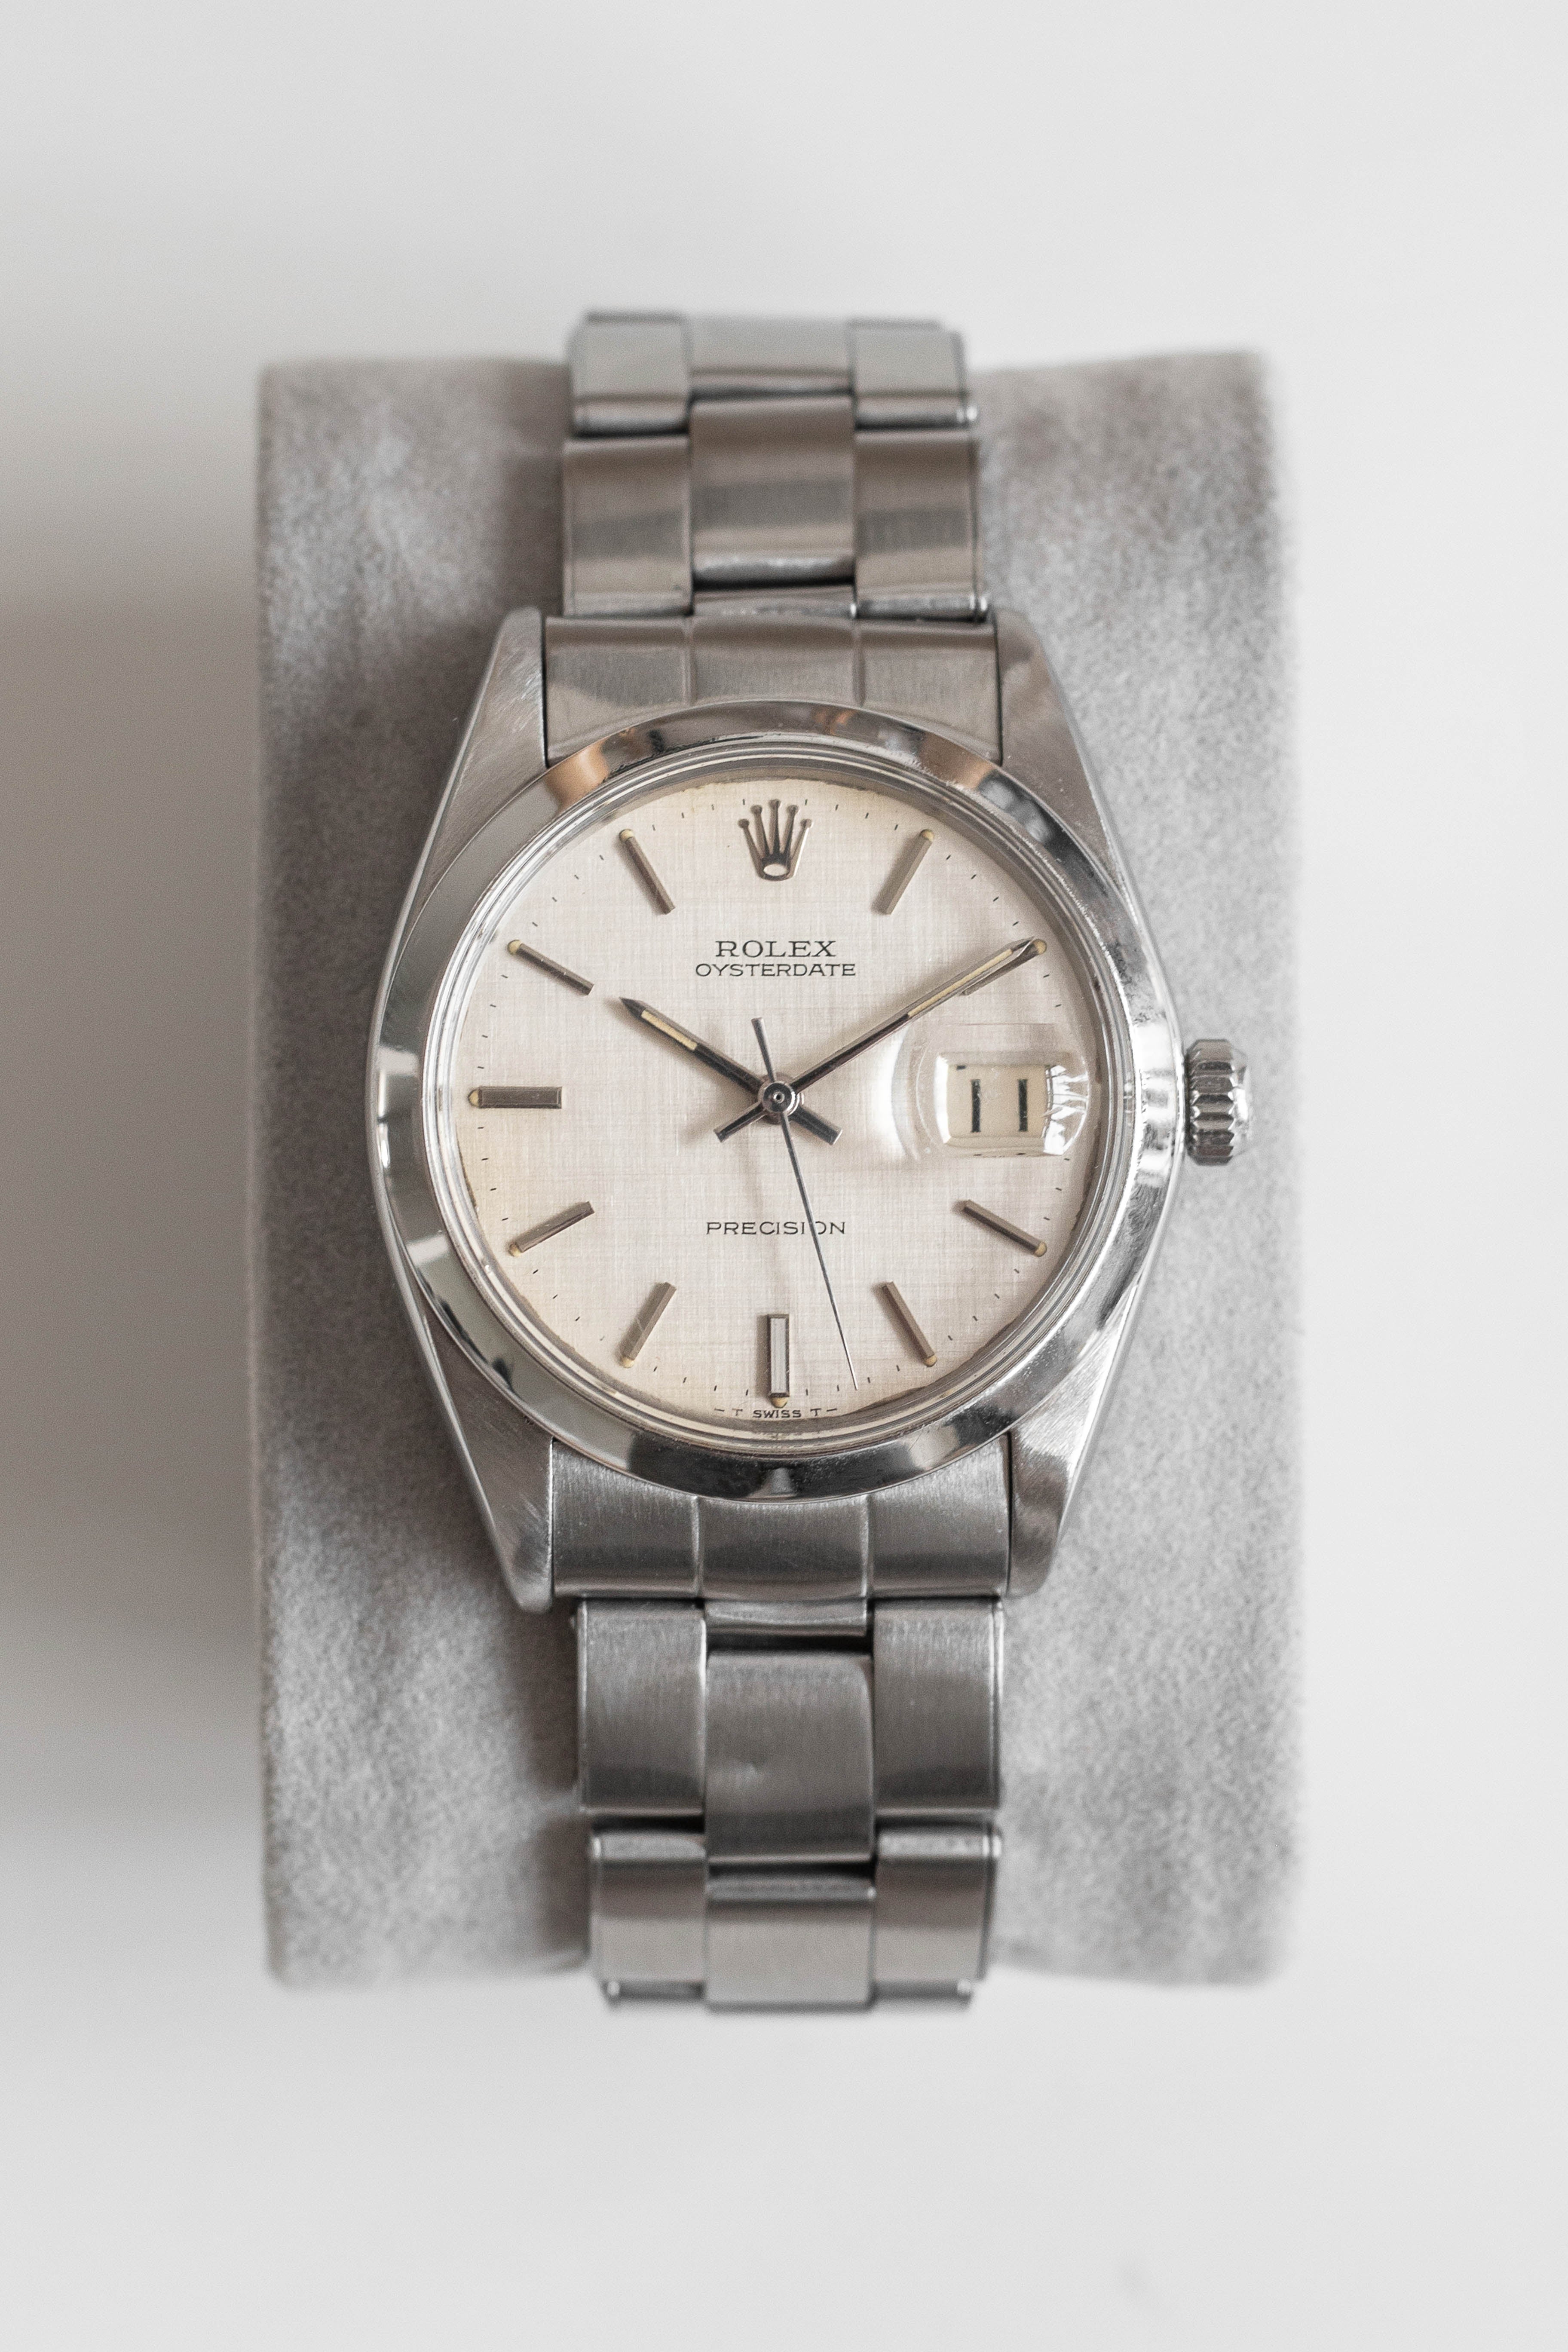 paritet Destruktiv bille Rolex Oysterdate Precision Ref. 6694 'Linen' Dial 1968 | Vintage & Pre-Owned  Luxury Watches – Wynn & Thayne